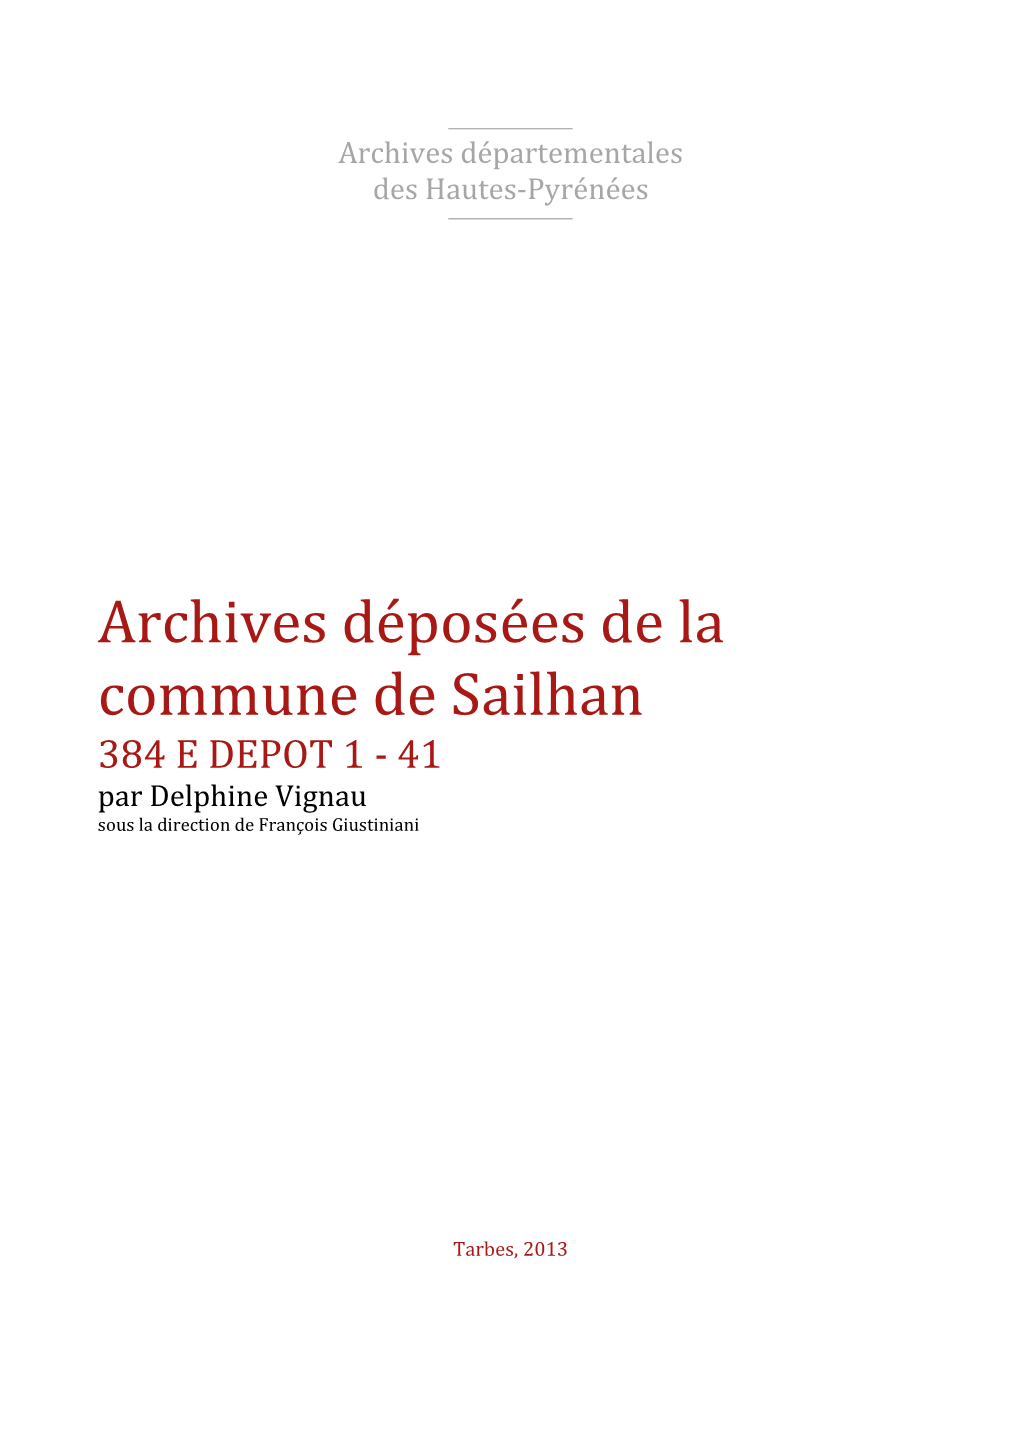 Archives Déposées De La Commune De Sailhan 384 E DEPOT 1 - 41 Par Delphine Vignau Sous La Direction De François Giustiniani